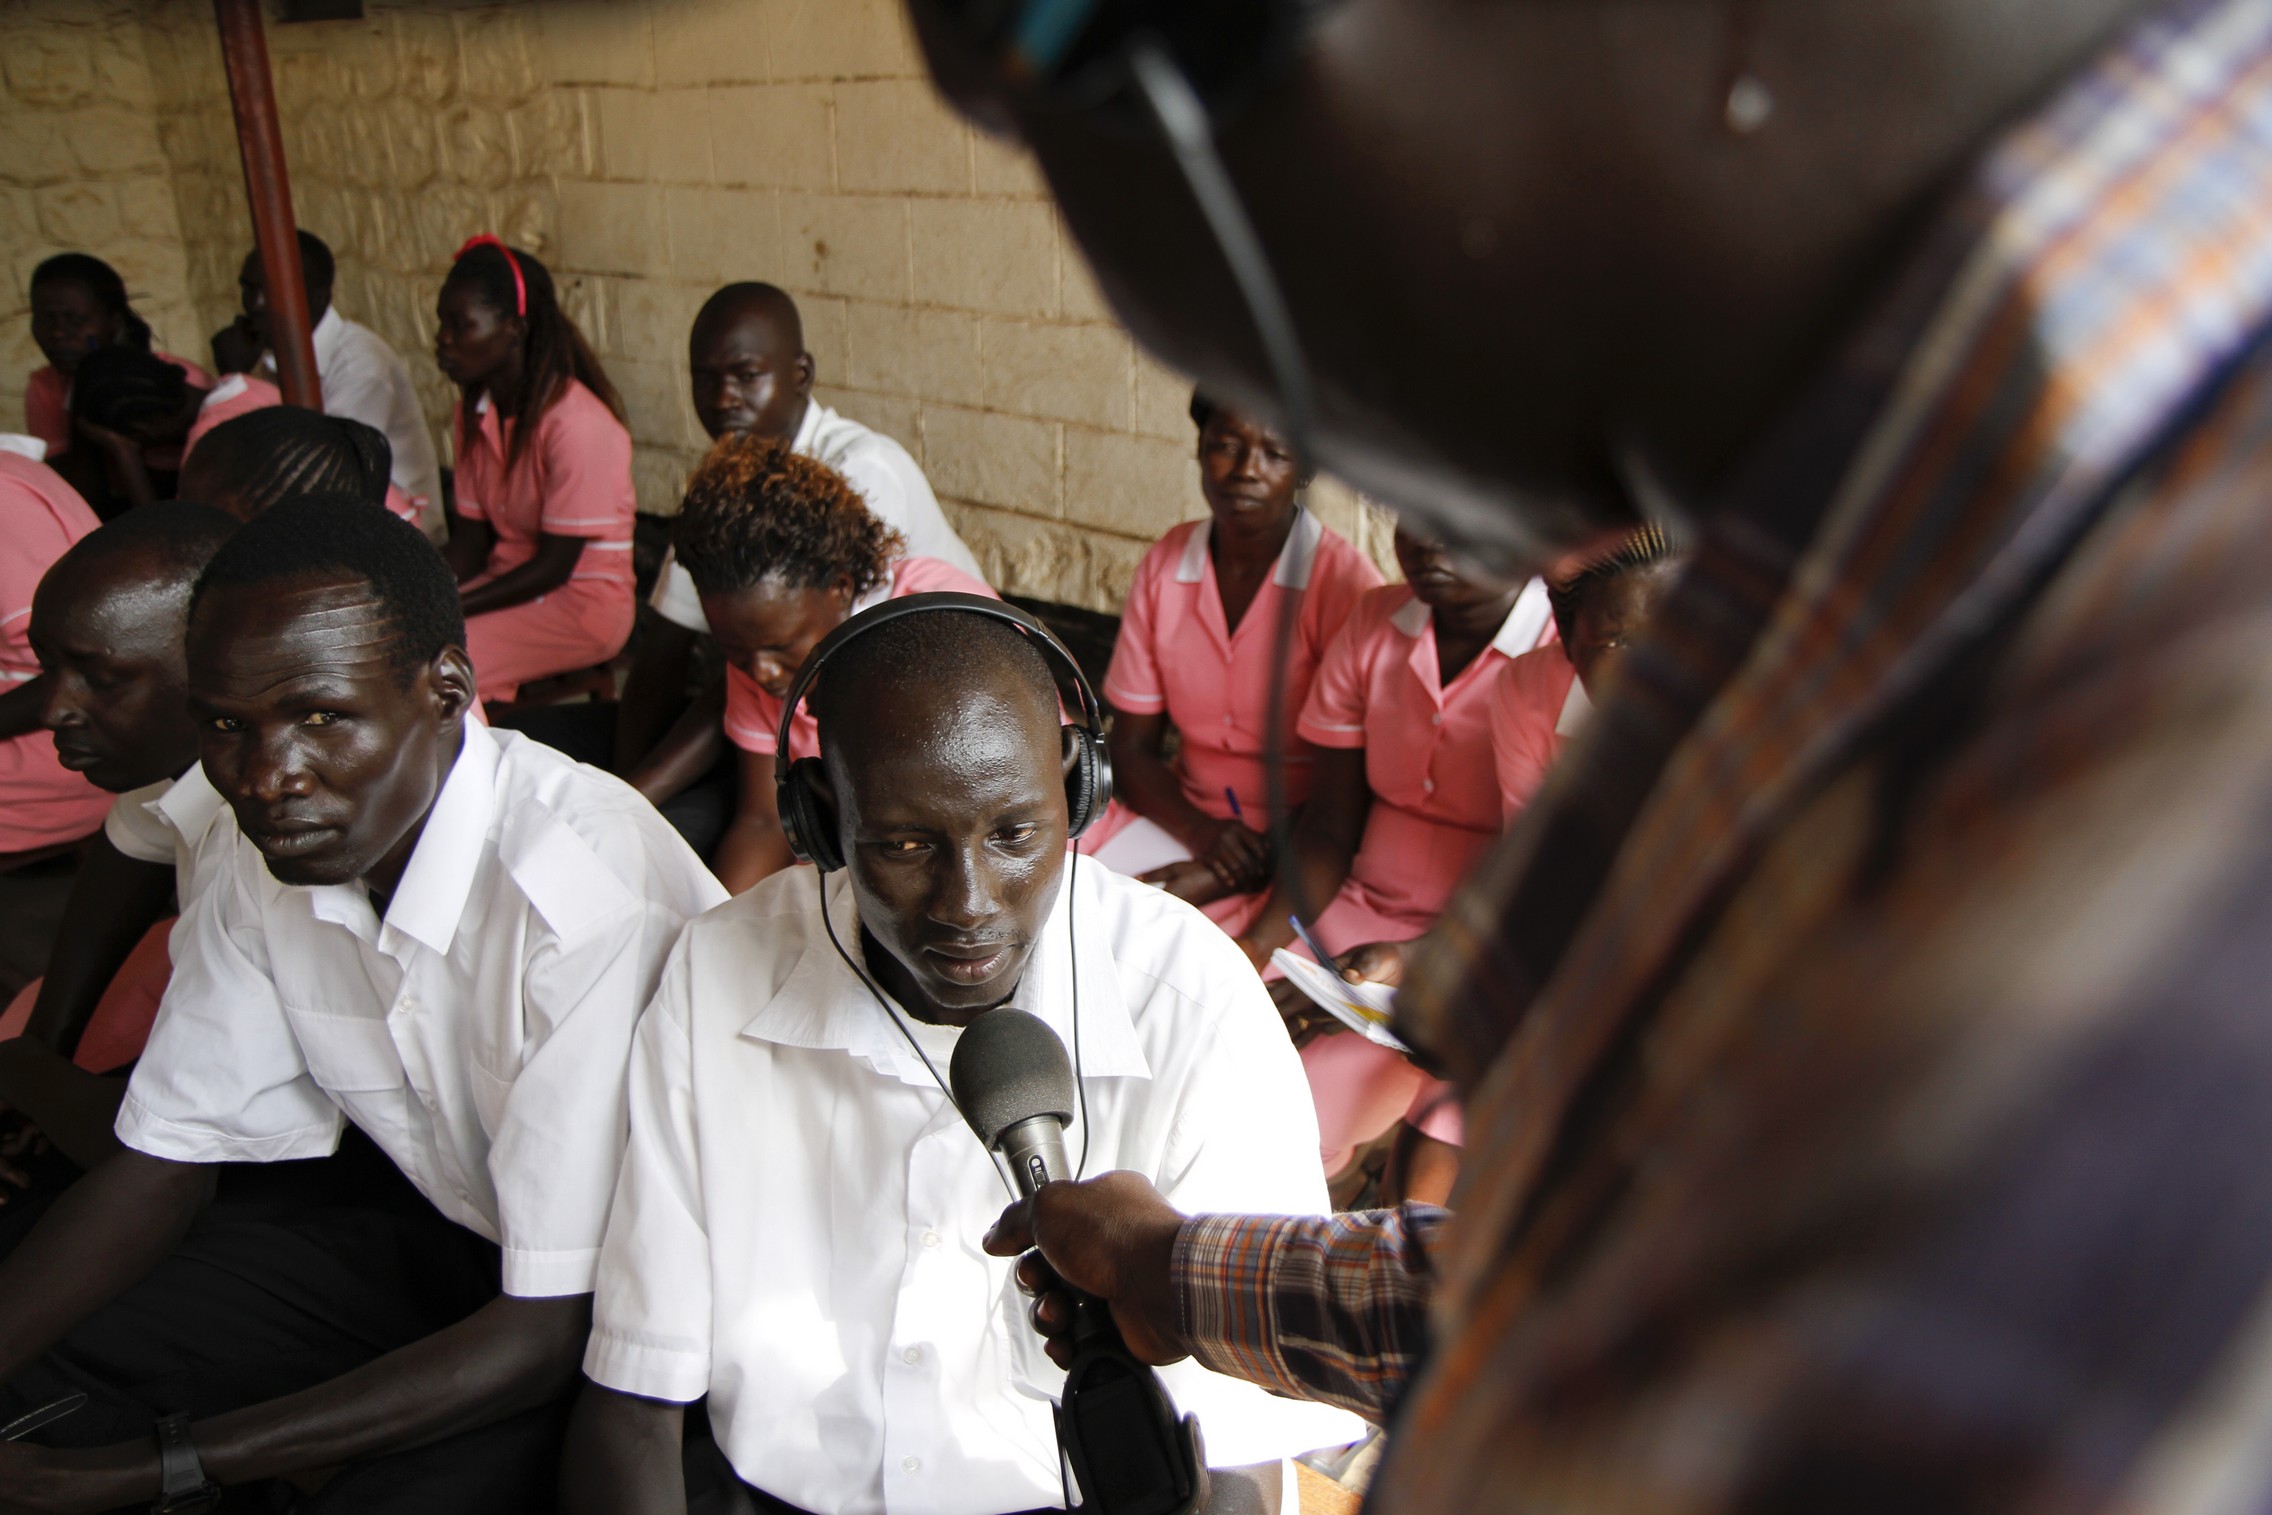 Reportage de Radio Miraya dans un hôpital du Soudan du Sud en août 2012. © Fondation Hirondelle / Marc Ellison